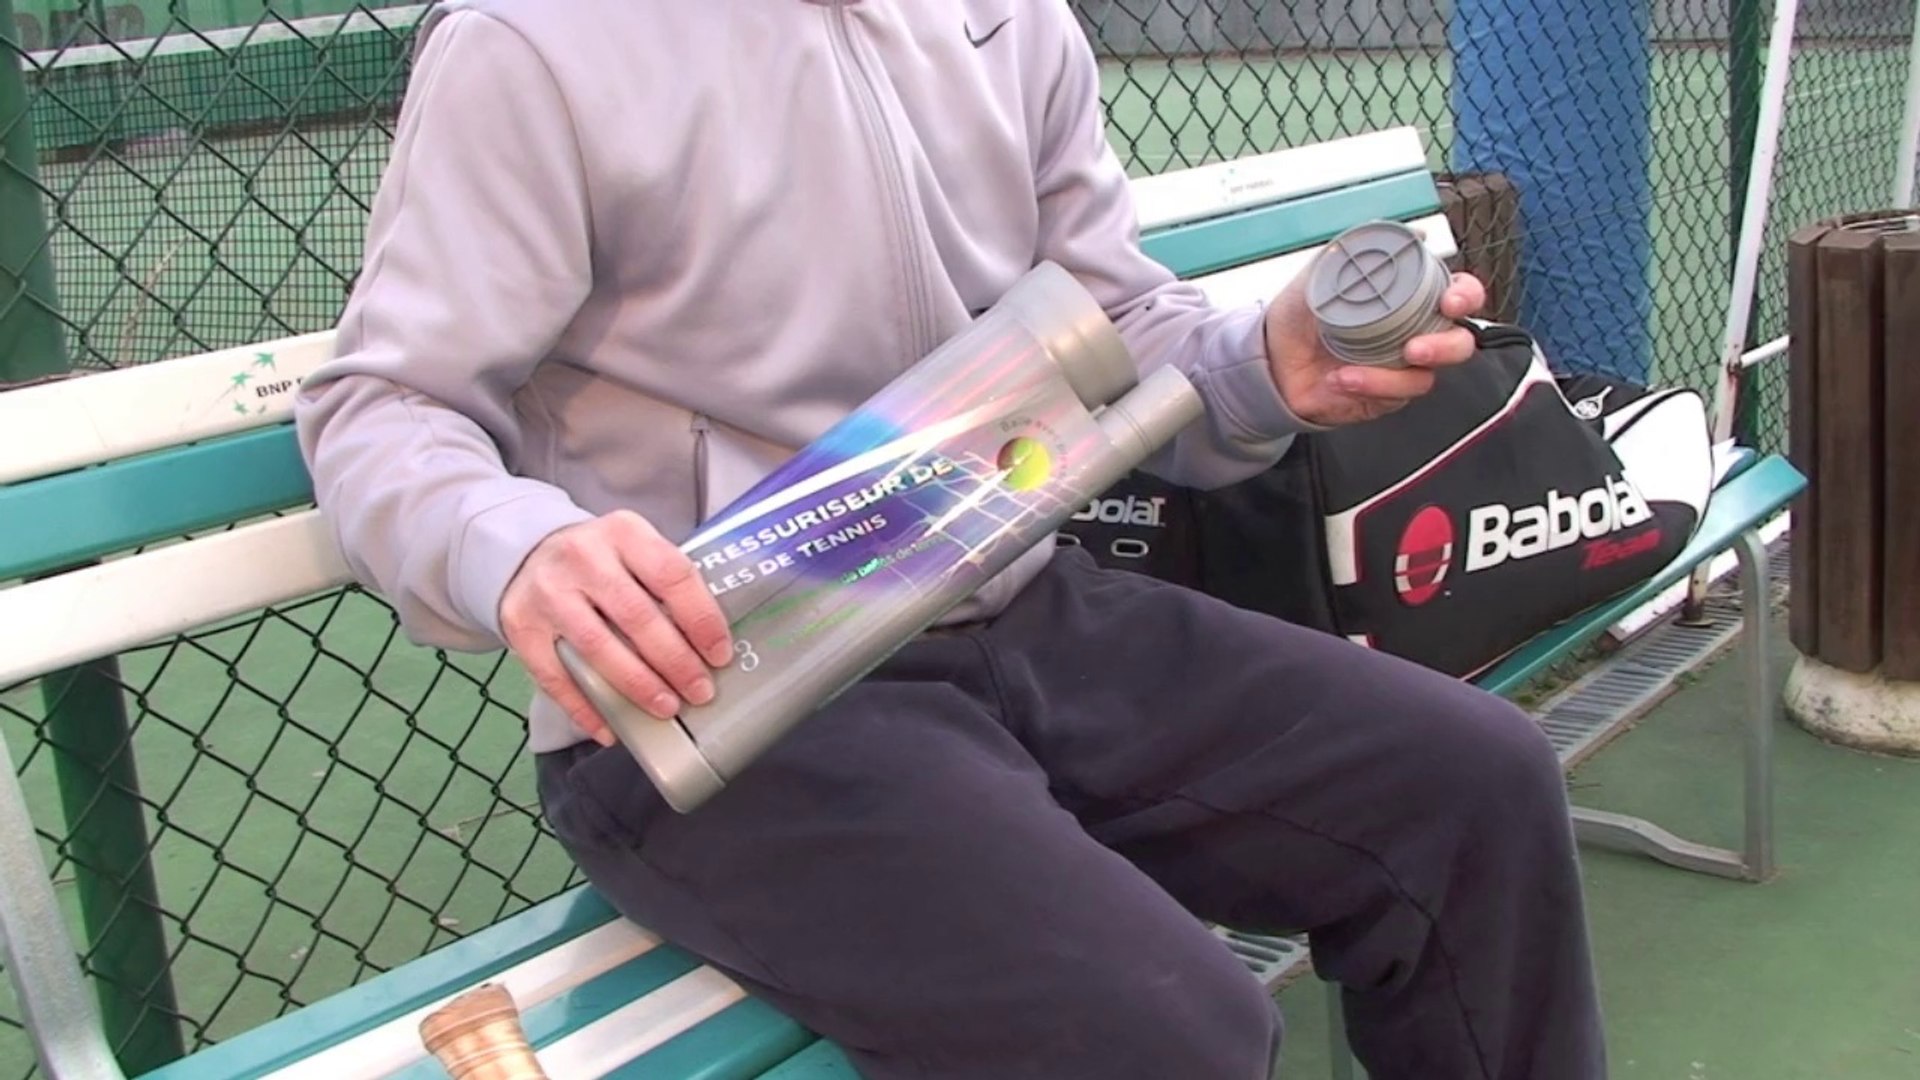 Le repressuriseur de balles de tennis - Vidéo Dailymotion